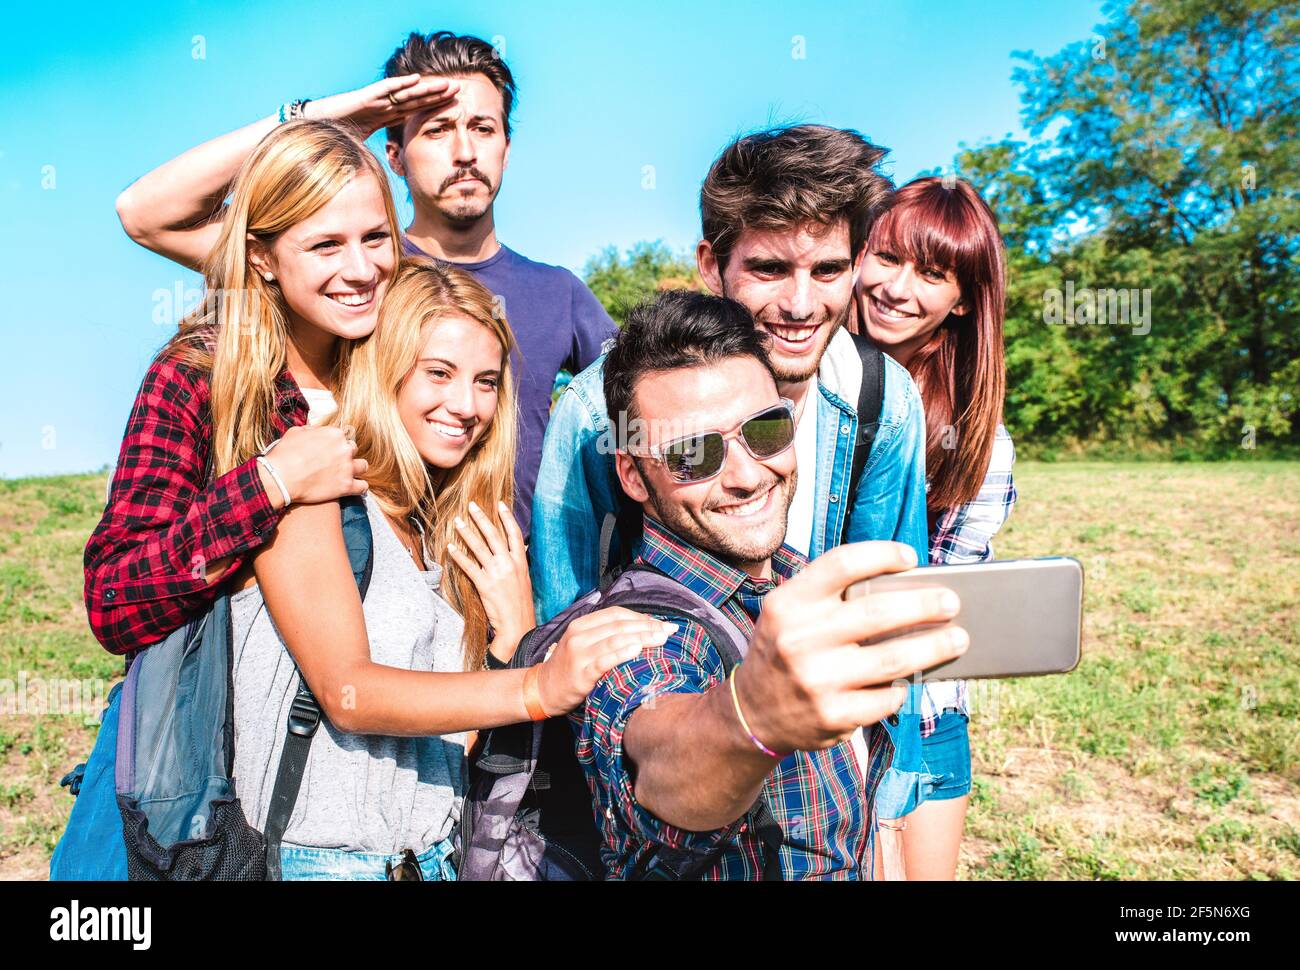 Gruppo di persone che prendono selfie a trekking escursione - felice amicizia e concetto di libertà con i giovani amici milleniali divertirsi insieme in campeggio Foto Stock